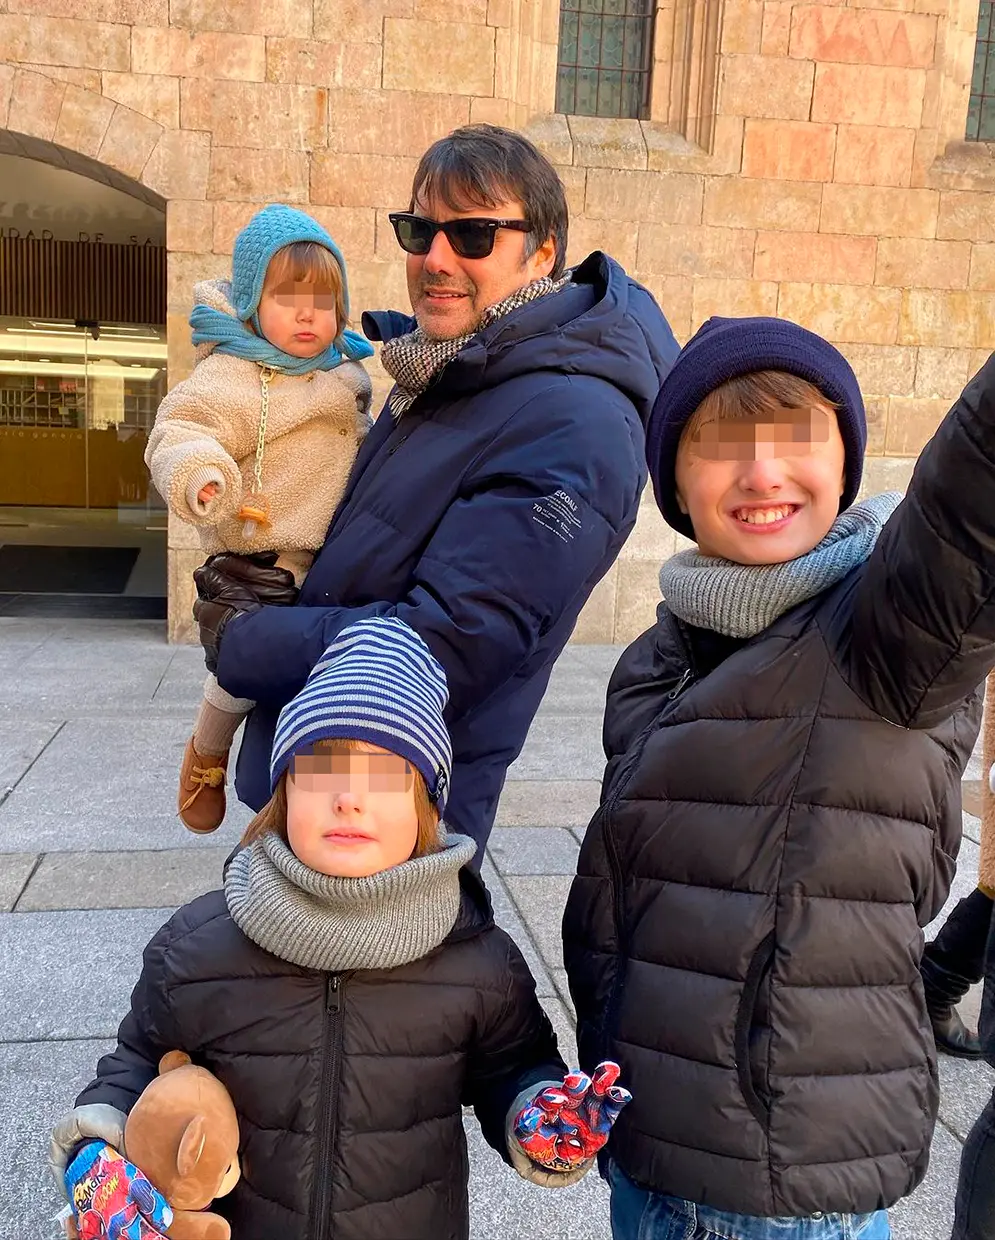 Ion Aramendi en un viaje con sus hijos, cargando a la pequeña en brazos